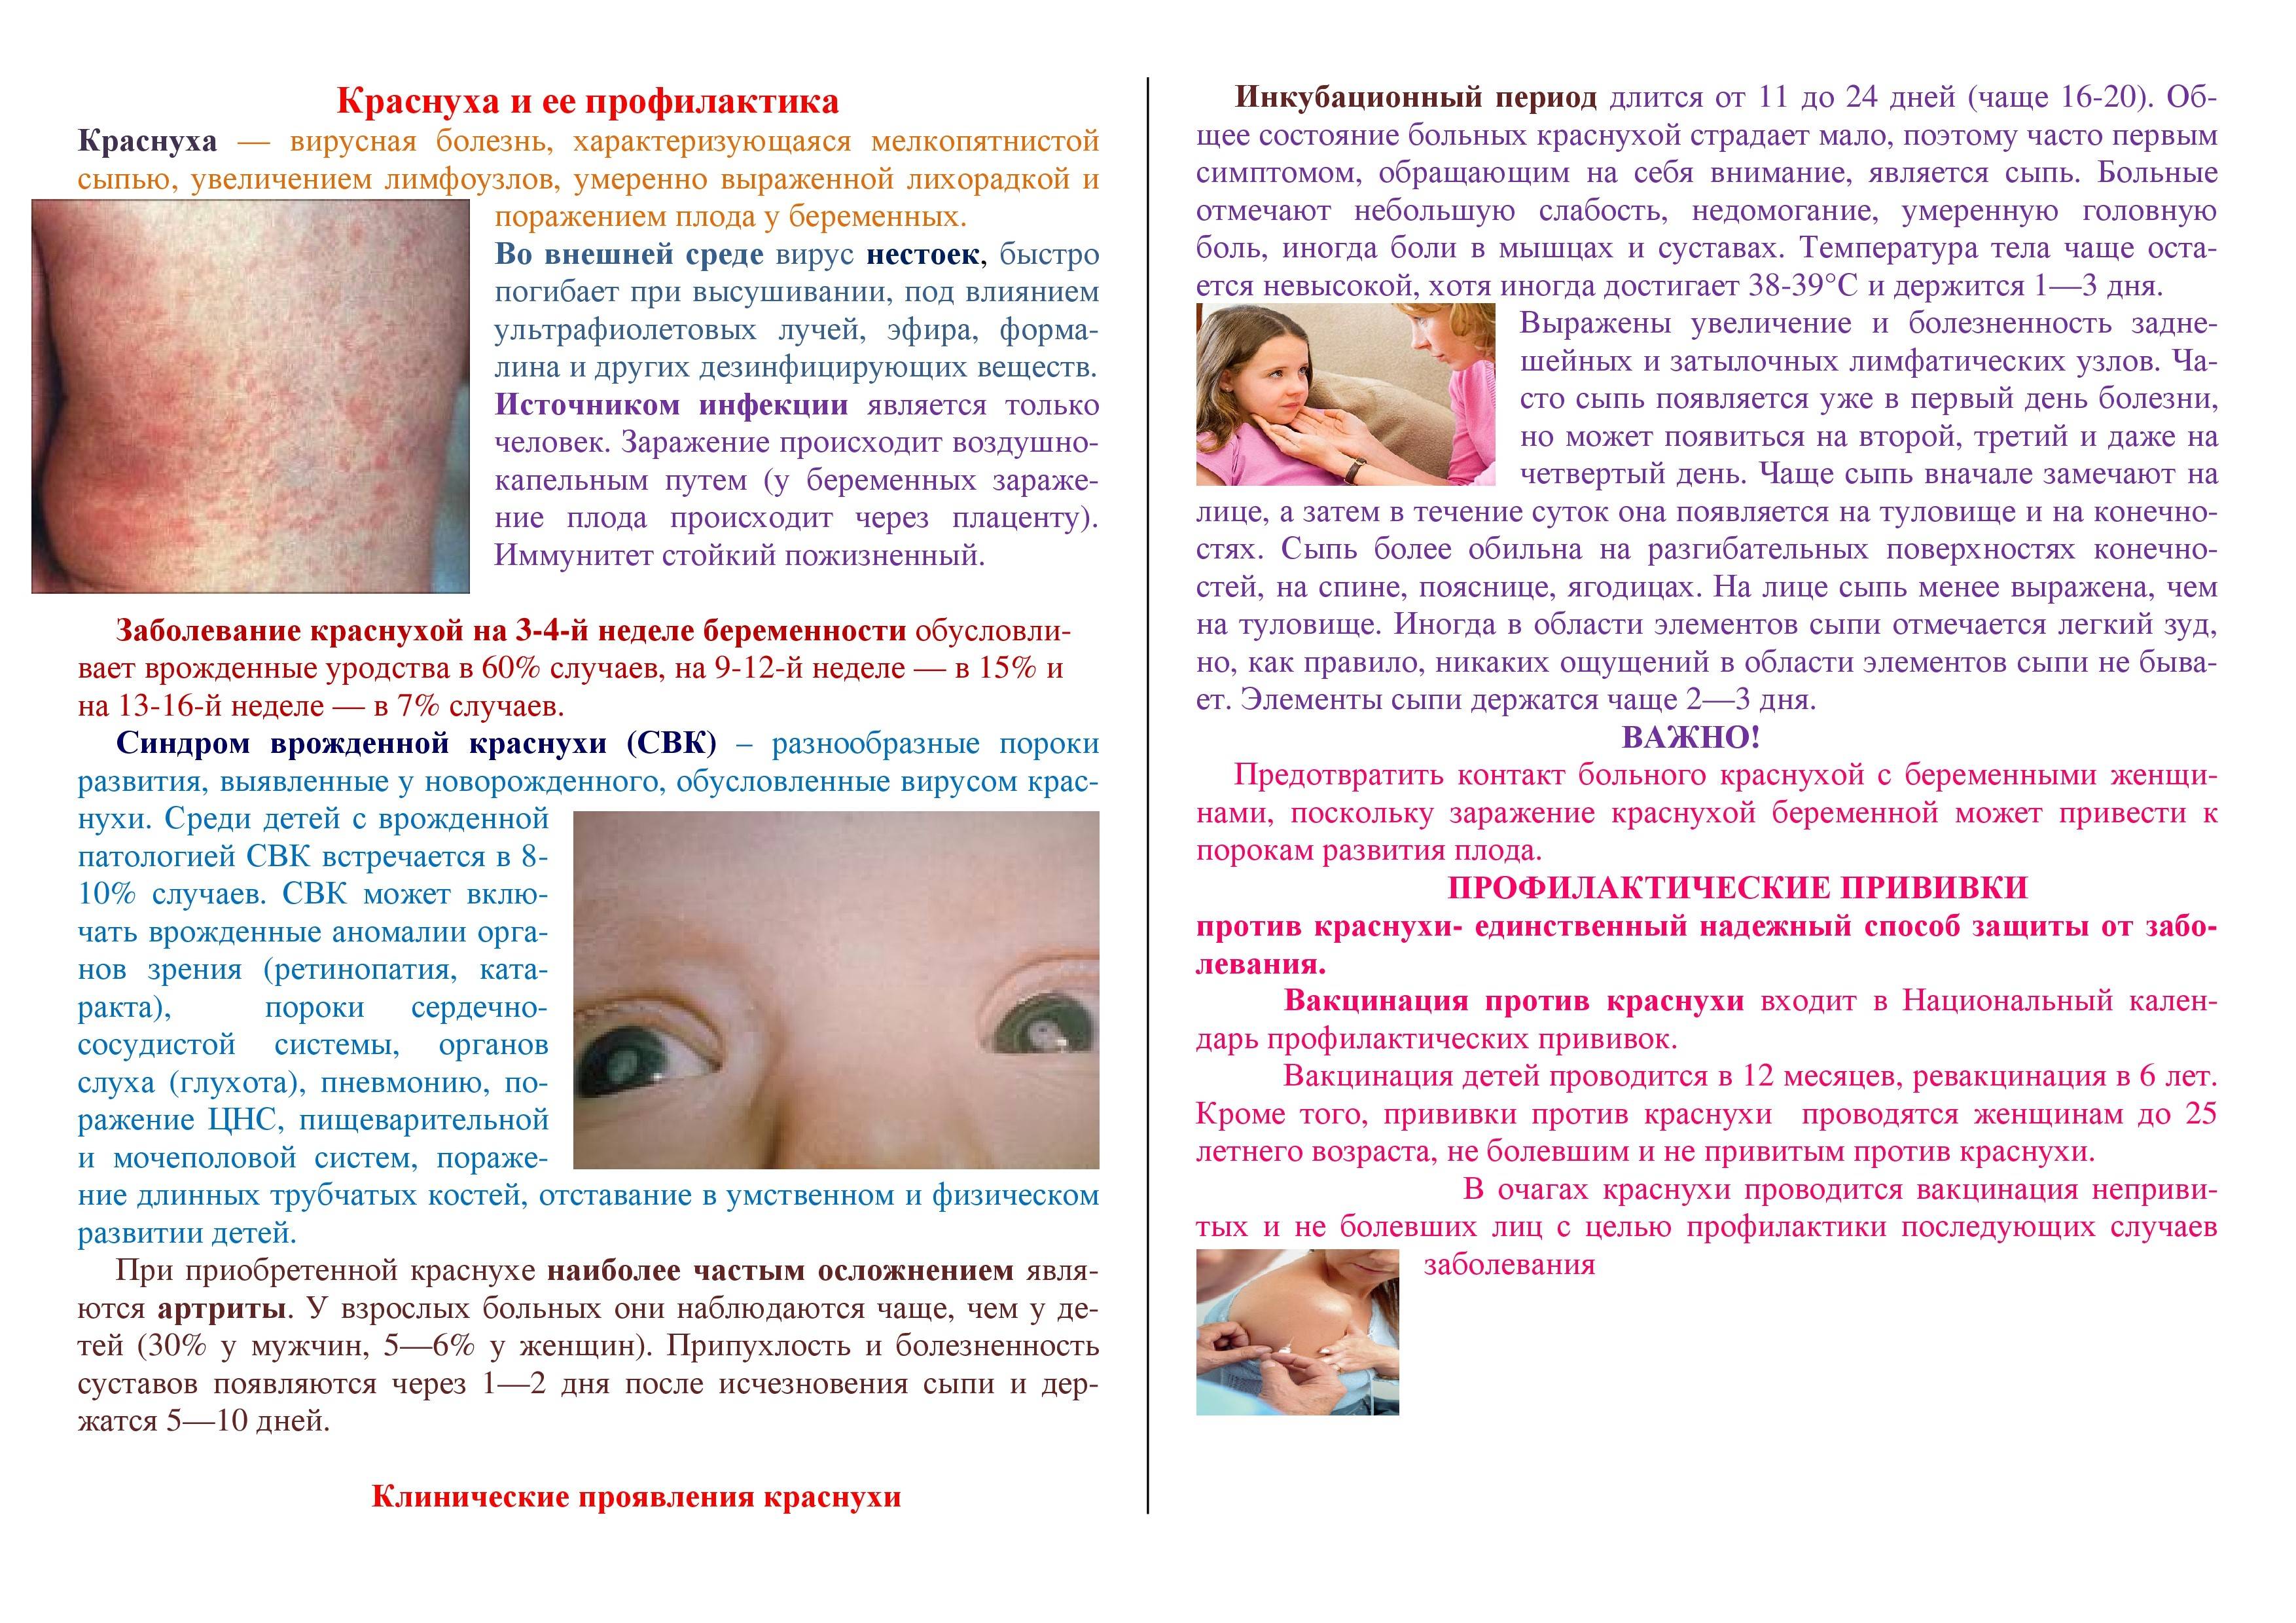 Корь у детей: симптомы, лечение и профилактика с фото примерами